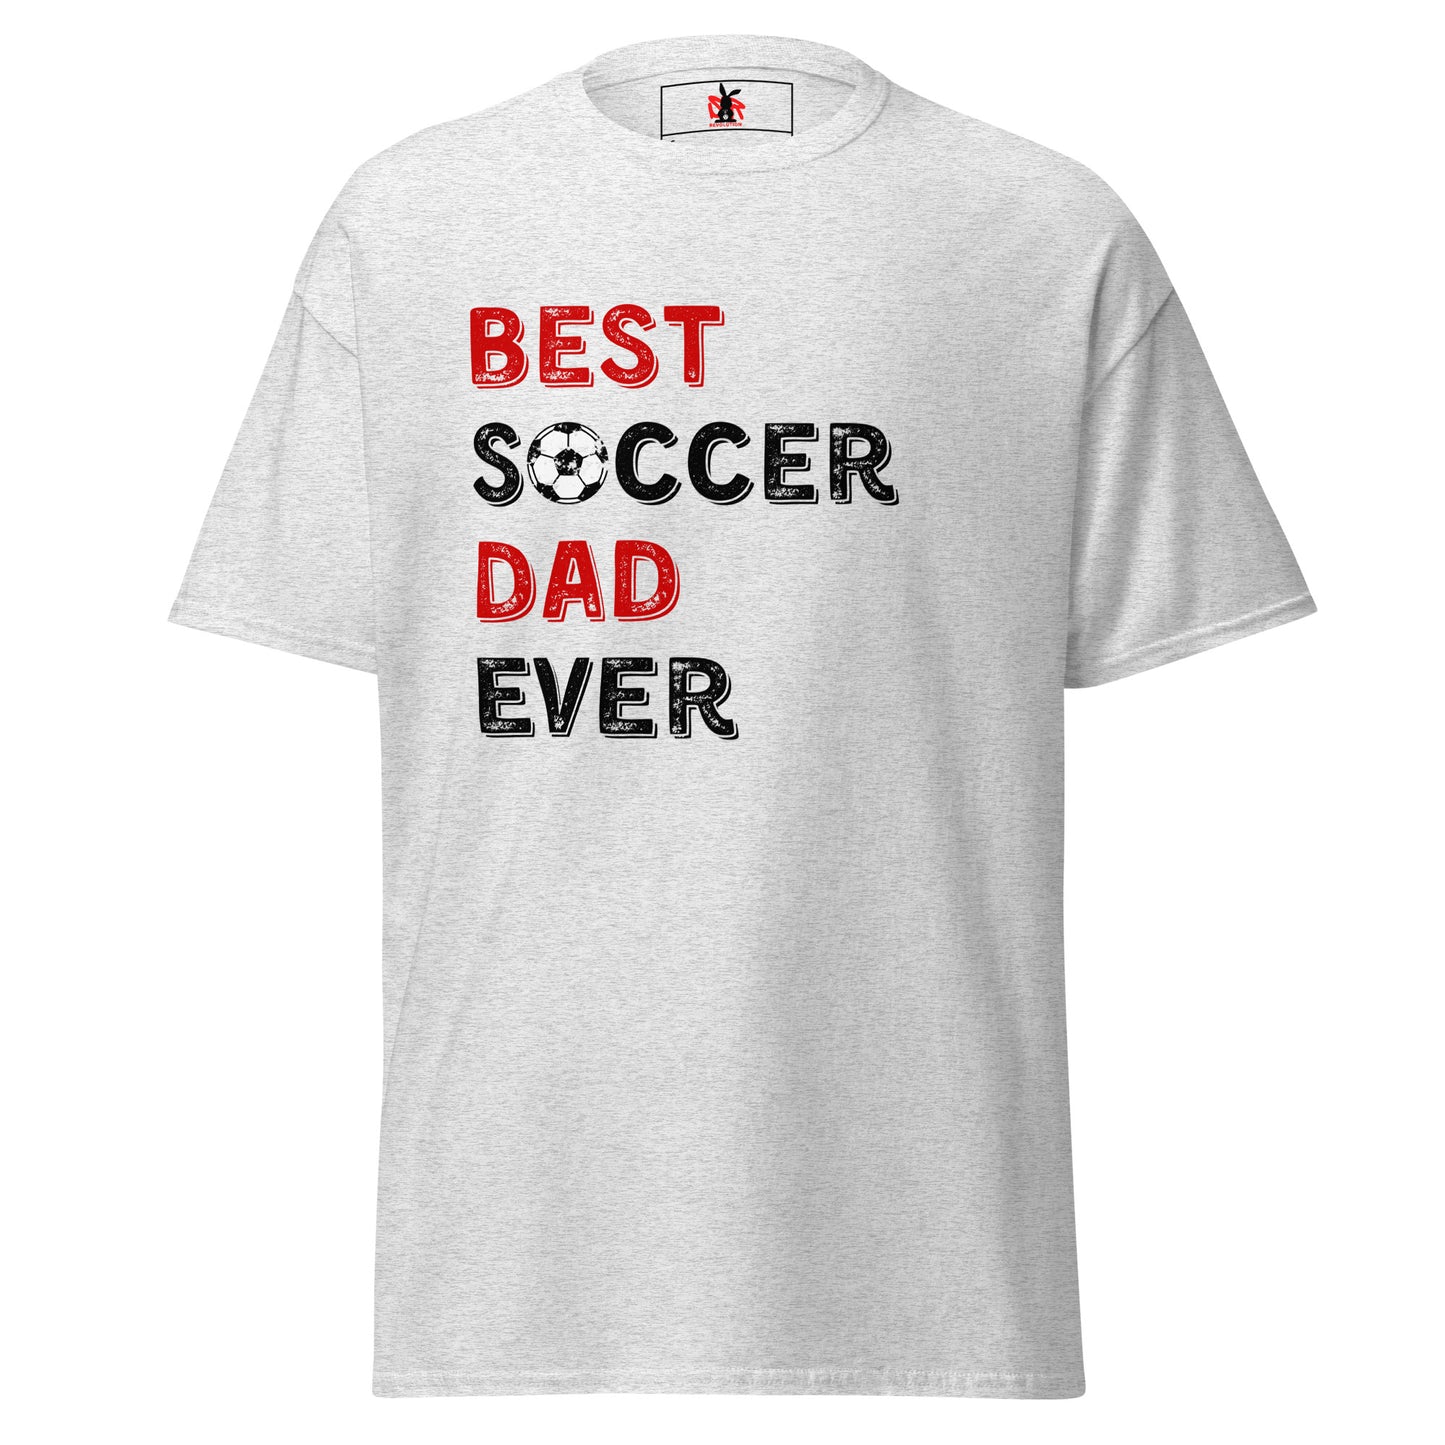 RUFC Best Soccer Dad Ever!